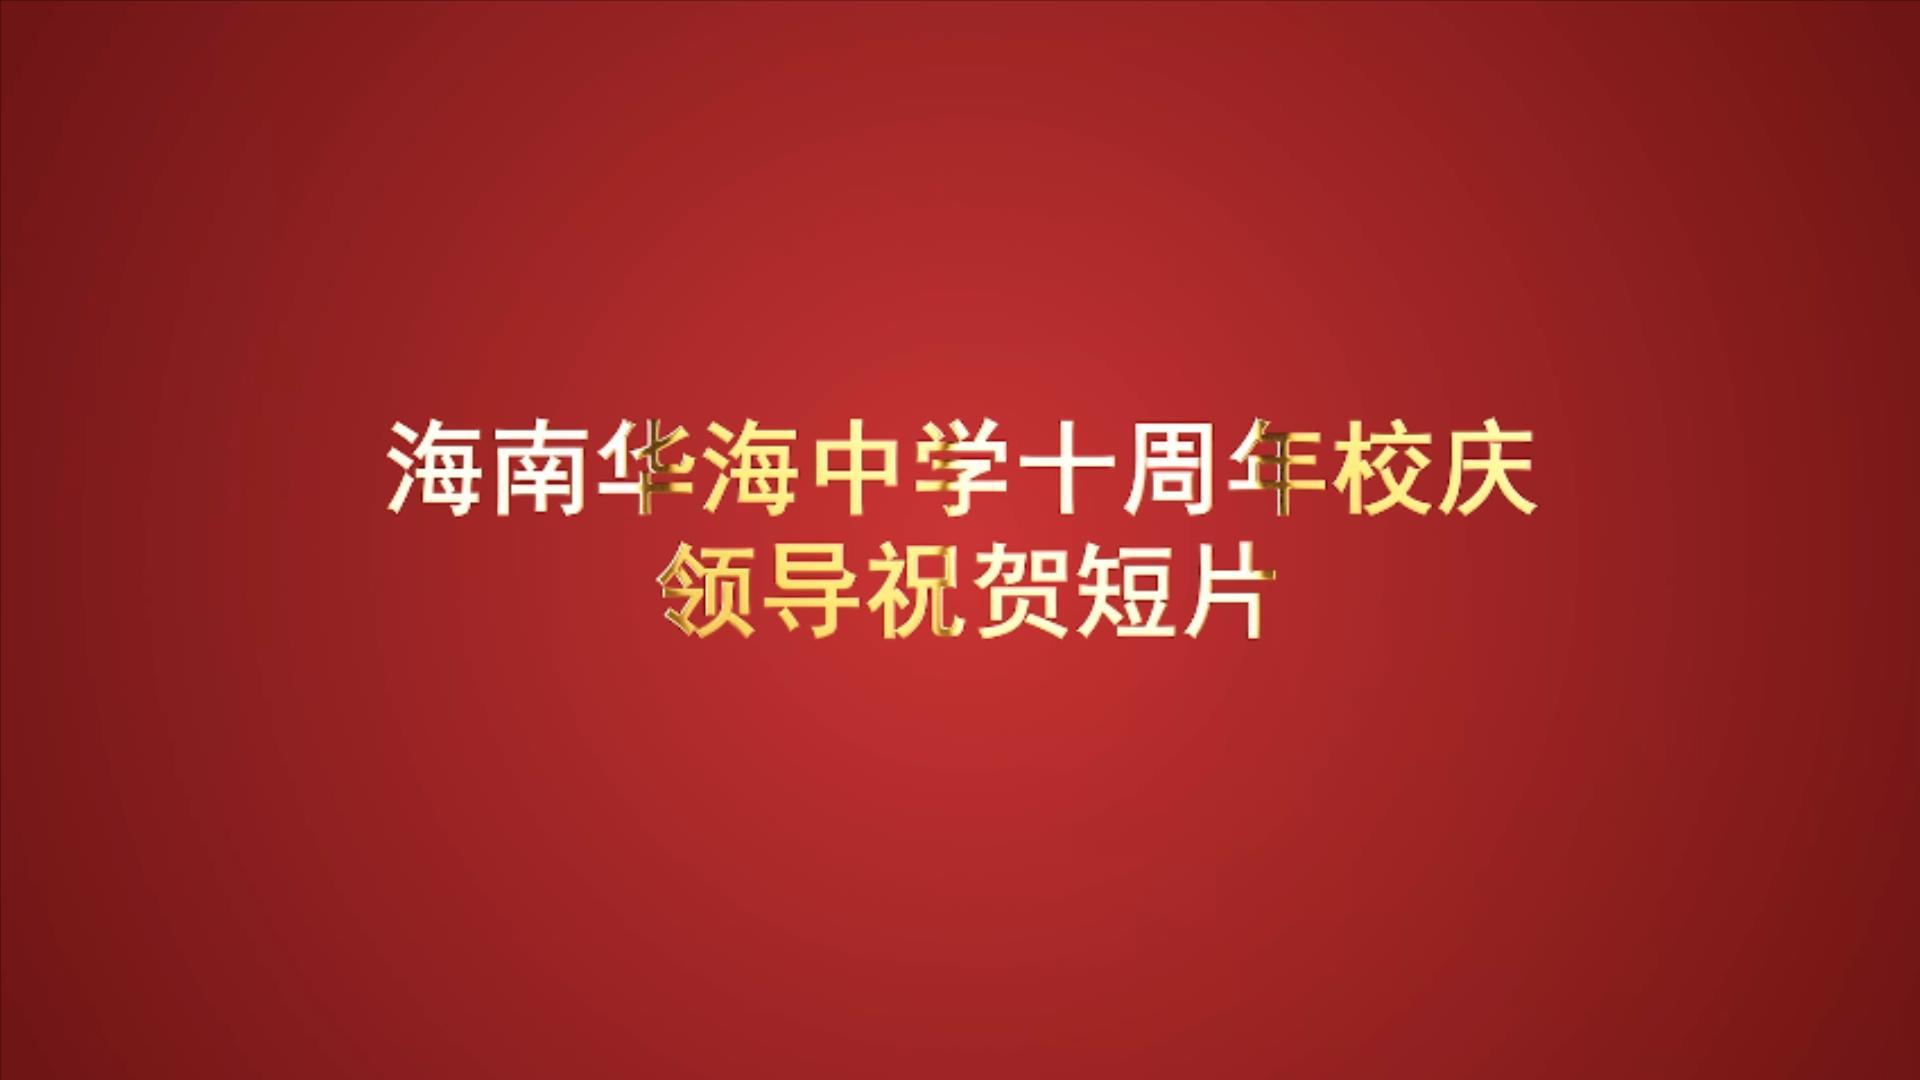 海南华海中学10周年校庆领导祝贺视频